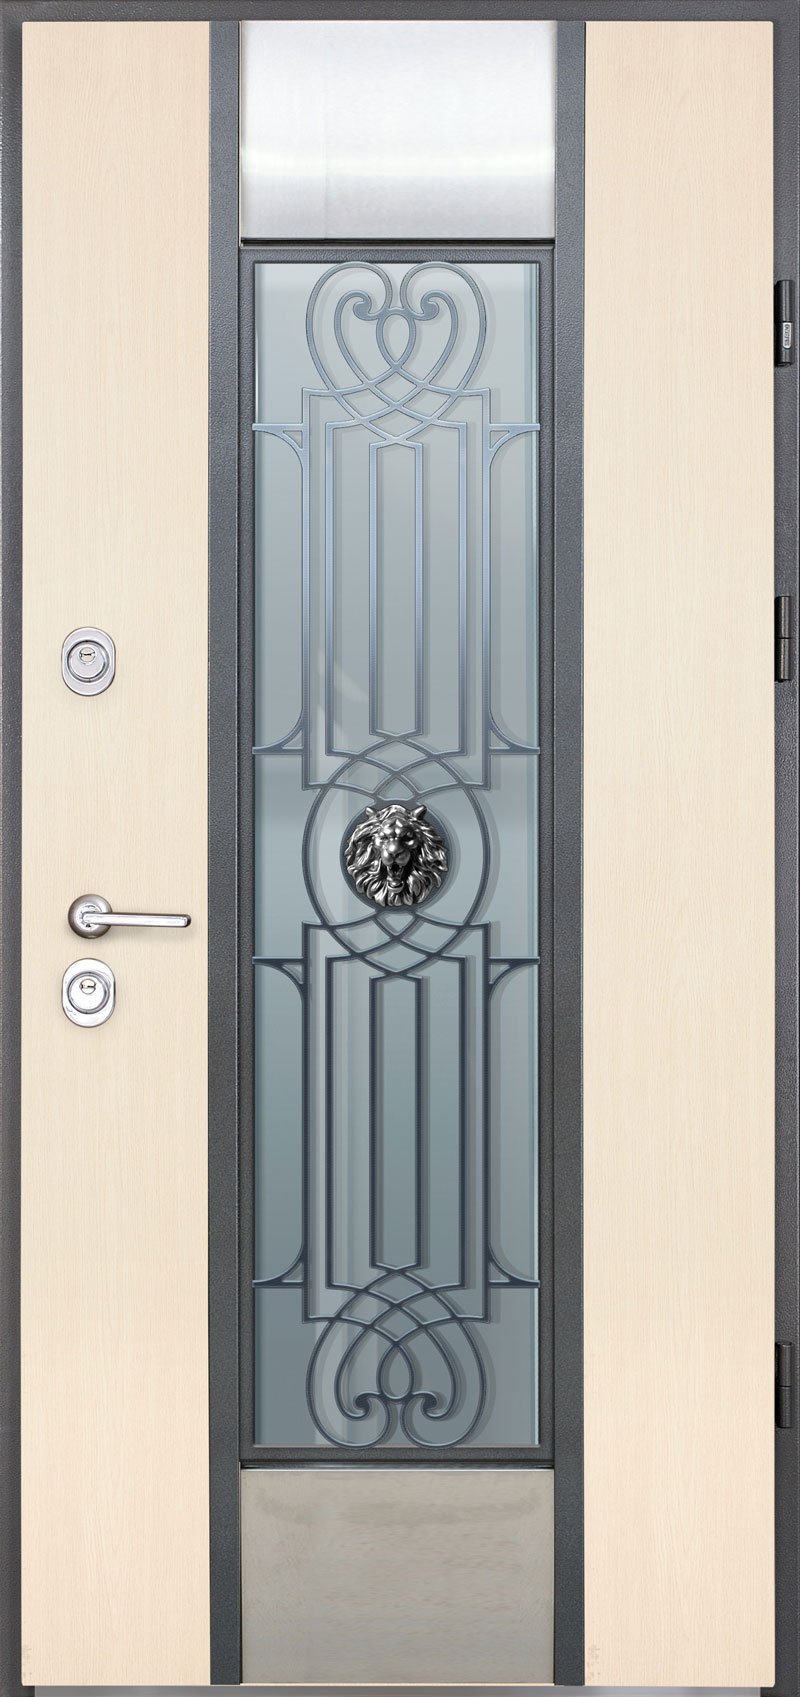 Входные металлические двери, цена в интернет-магазине, с доставкой по Украине - Proof Securemme • Leon 2